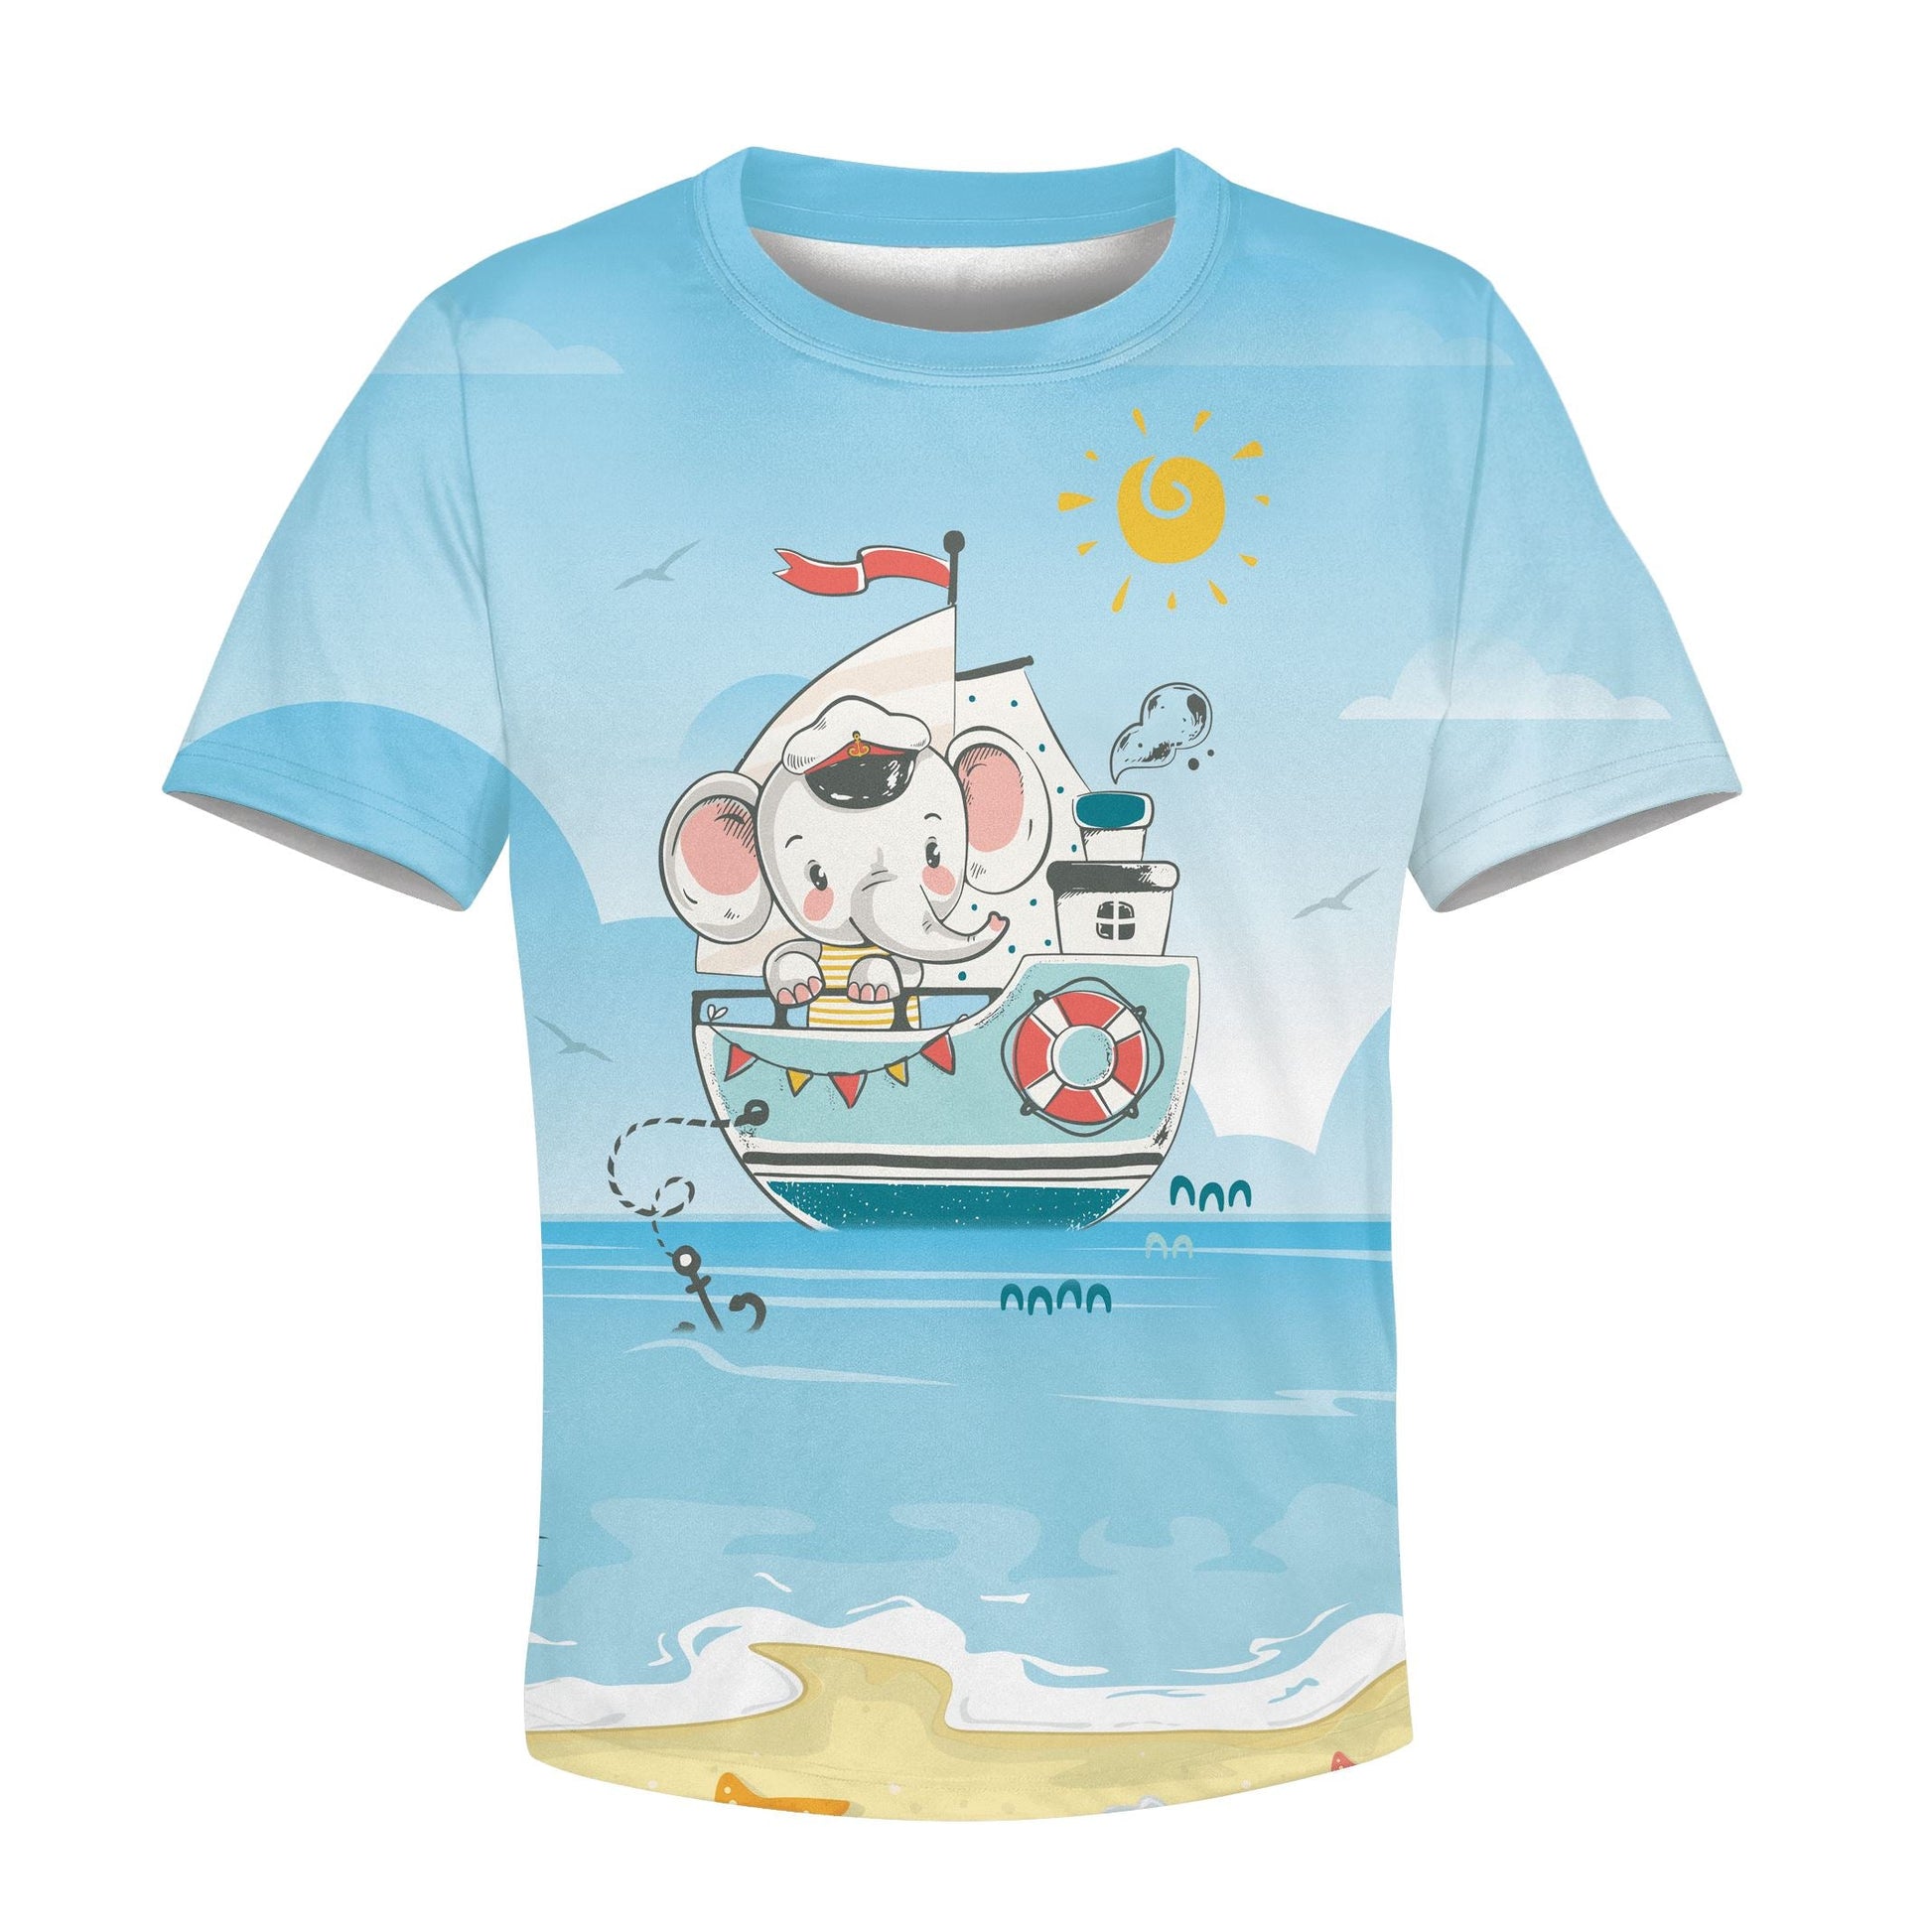 Elephant on the ship Kid Custom Hoodies T-shirt Apparel HD-PET110268K kid 3D apparel Kid T-Shirt XS 